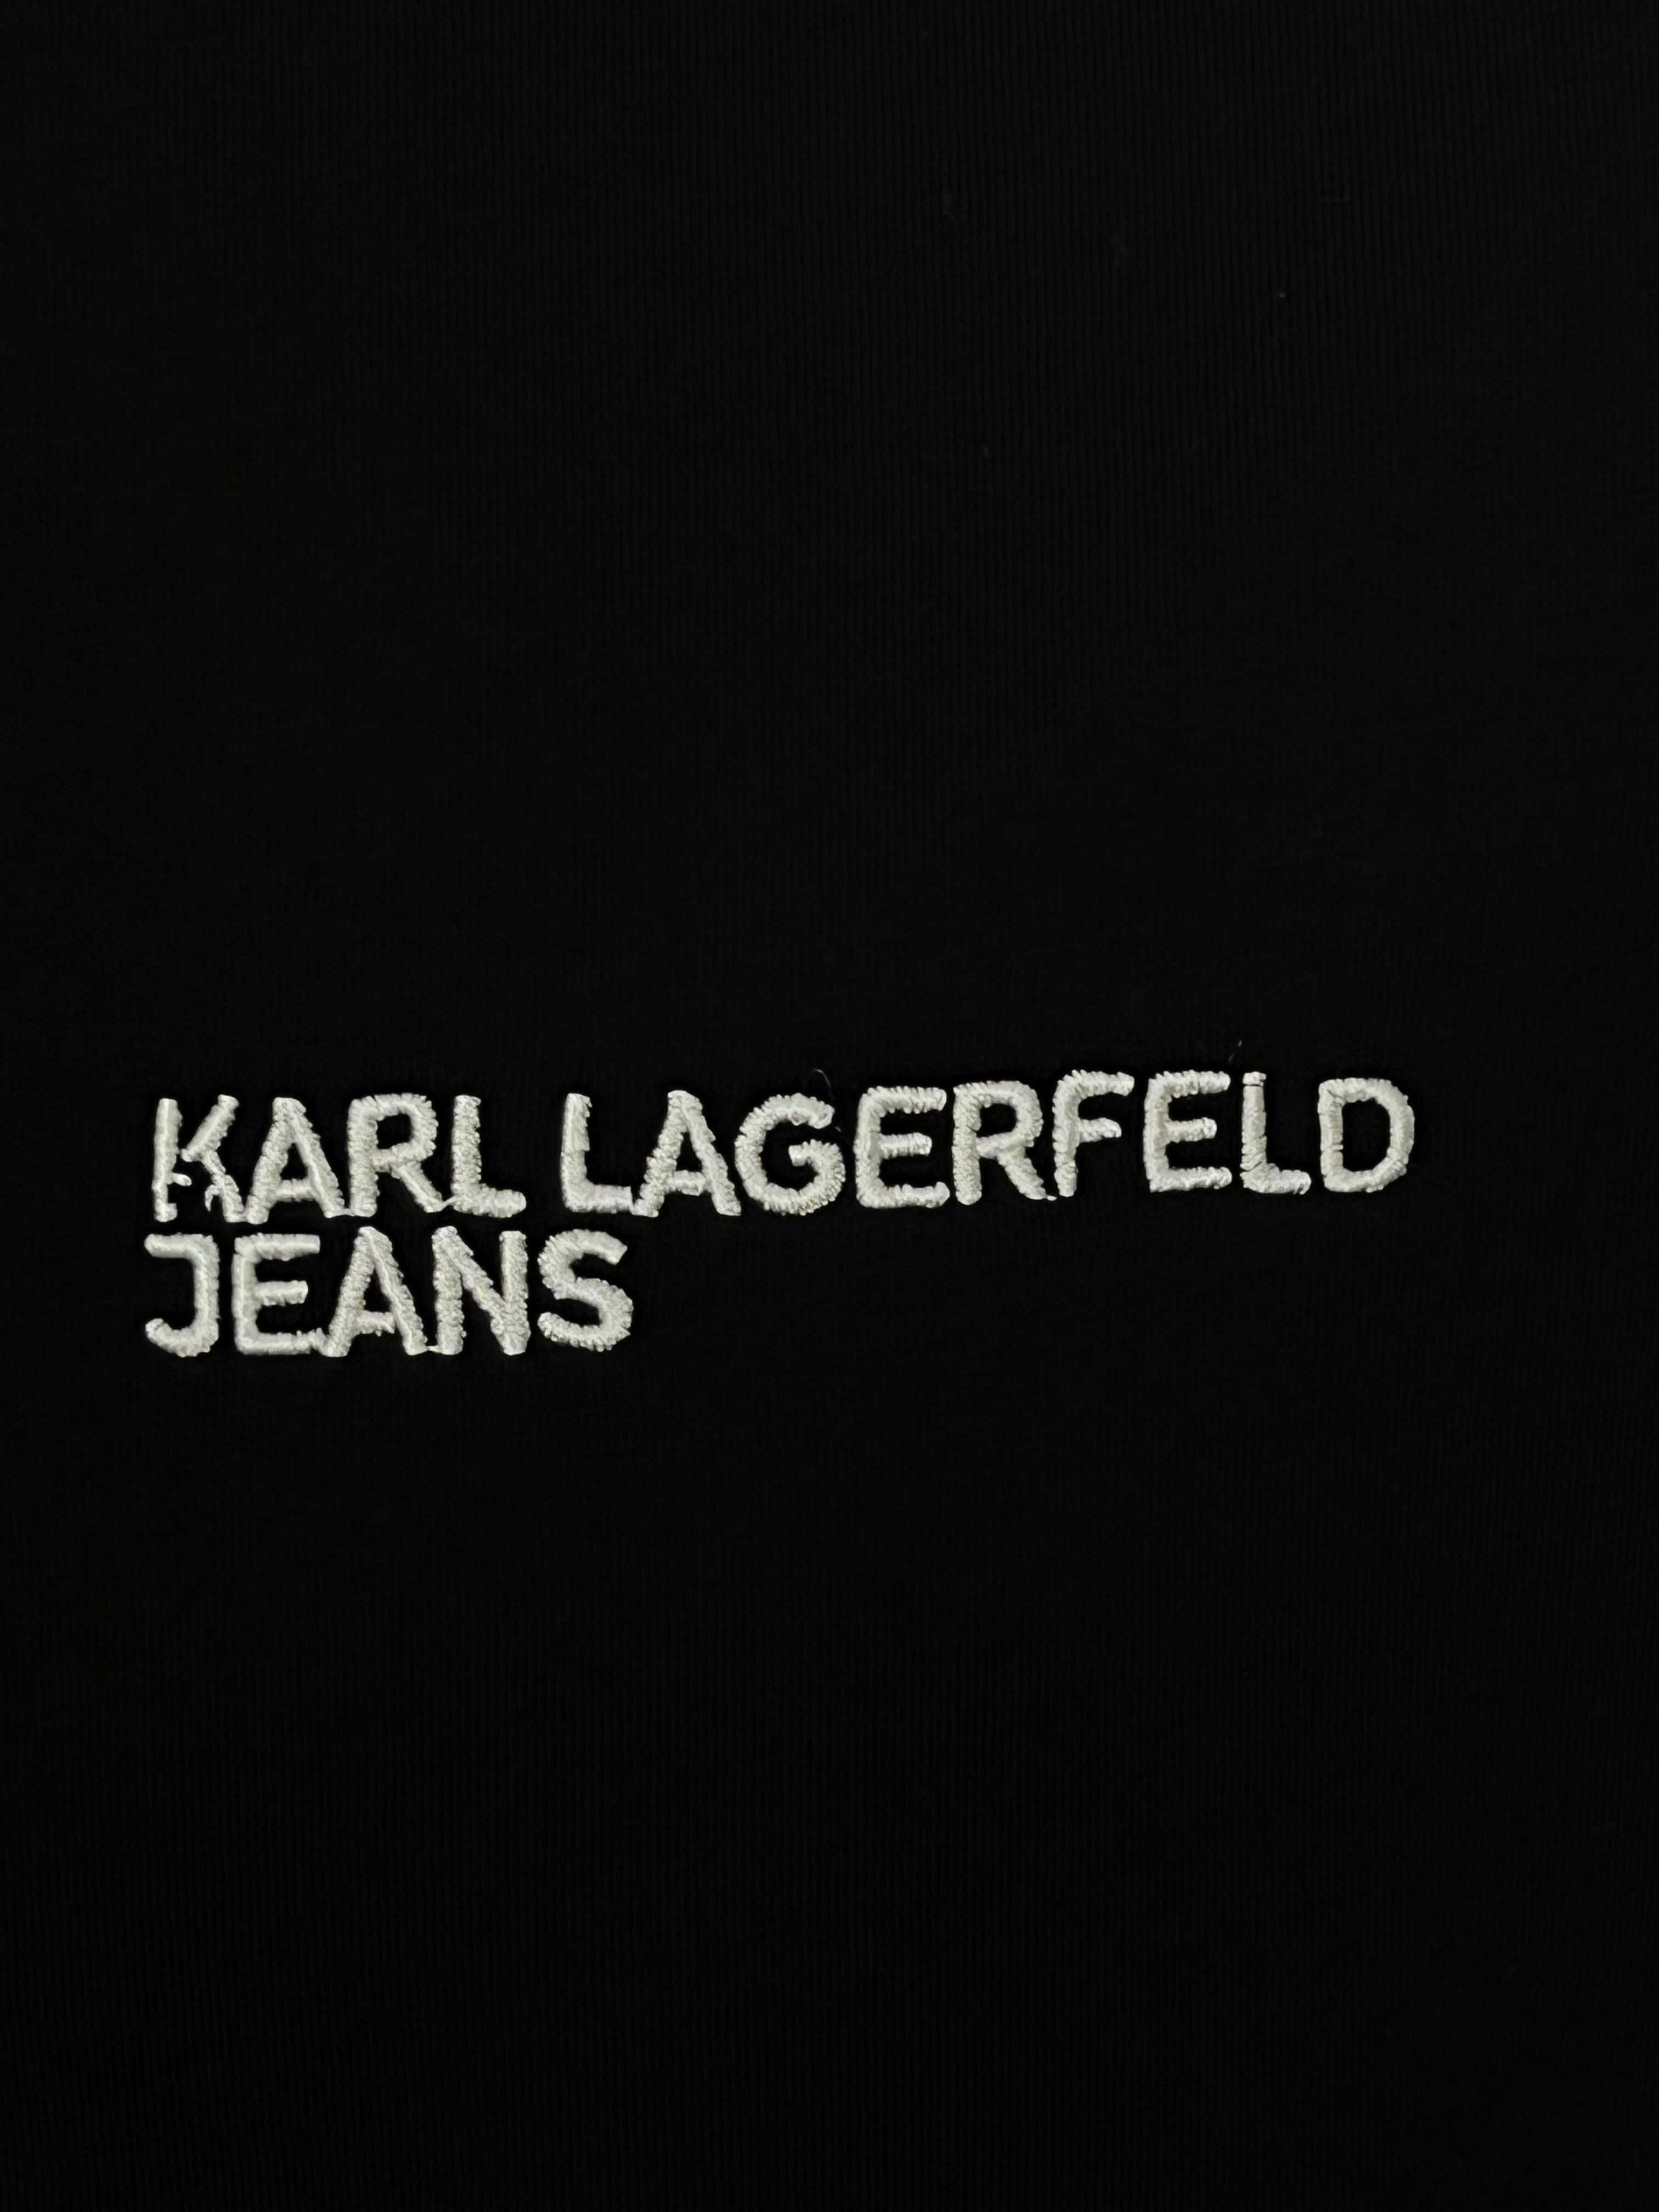 Karl Lagerfeld Jeans БЯЛ и ЧЕРЕН Цвят Тениска БРОДЕРИЯ - S M L XL XXL